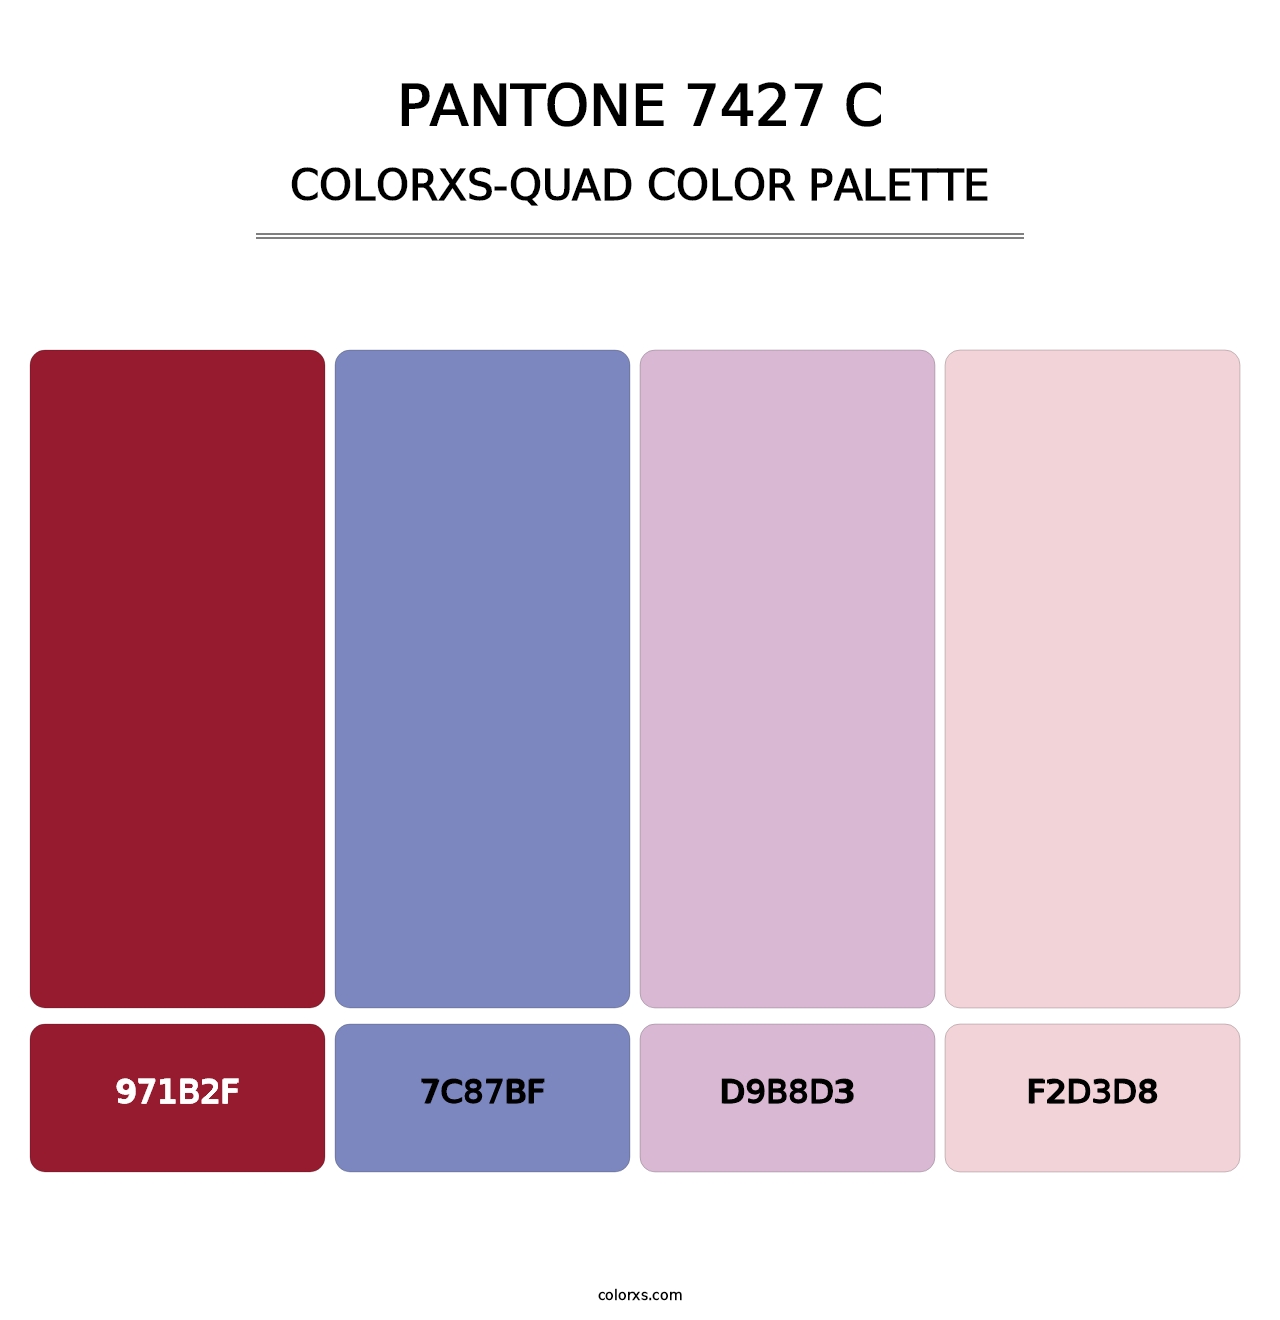 PANTONE 7427 C - Colorxs Quad Palette